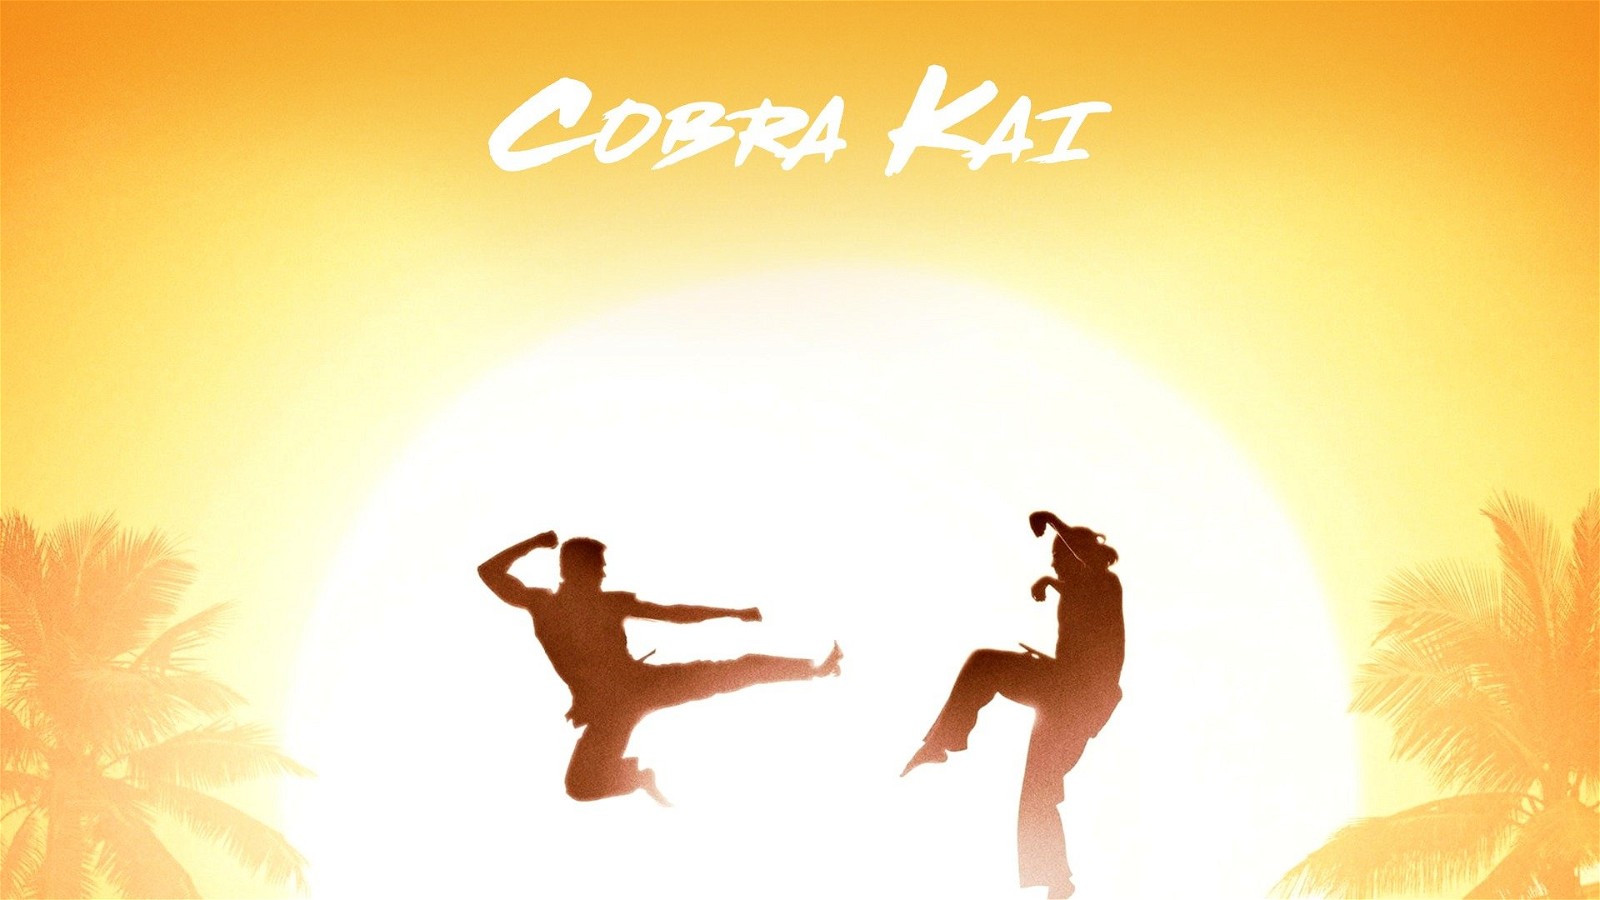 Cobra Kai (2018-Present)